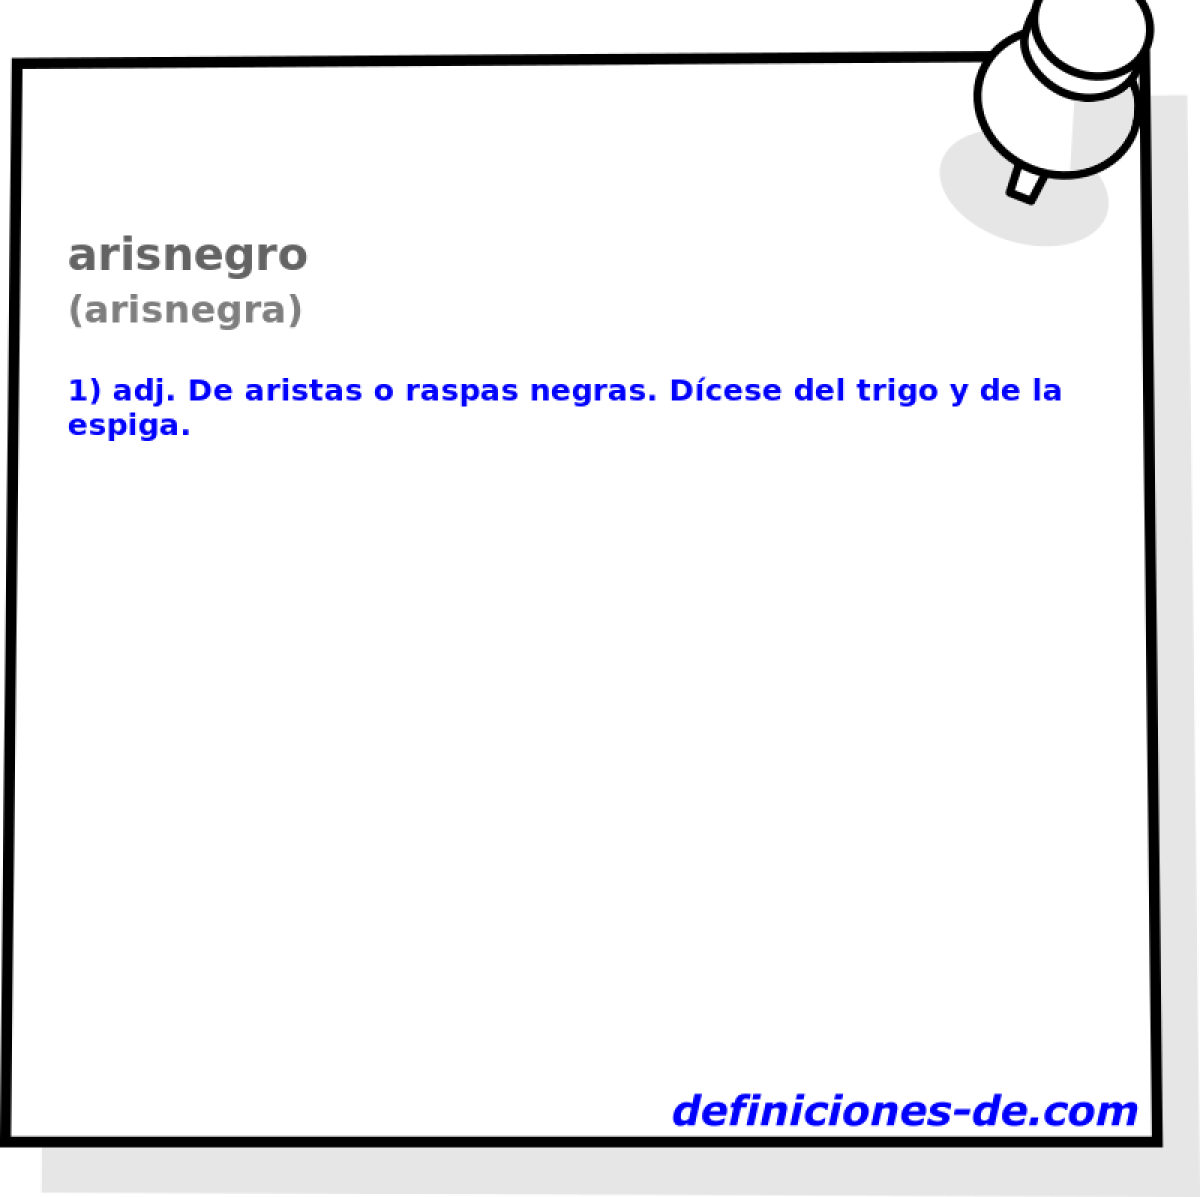 arisnegro (arisnegra)